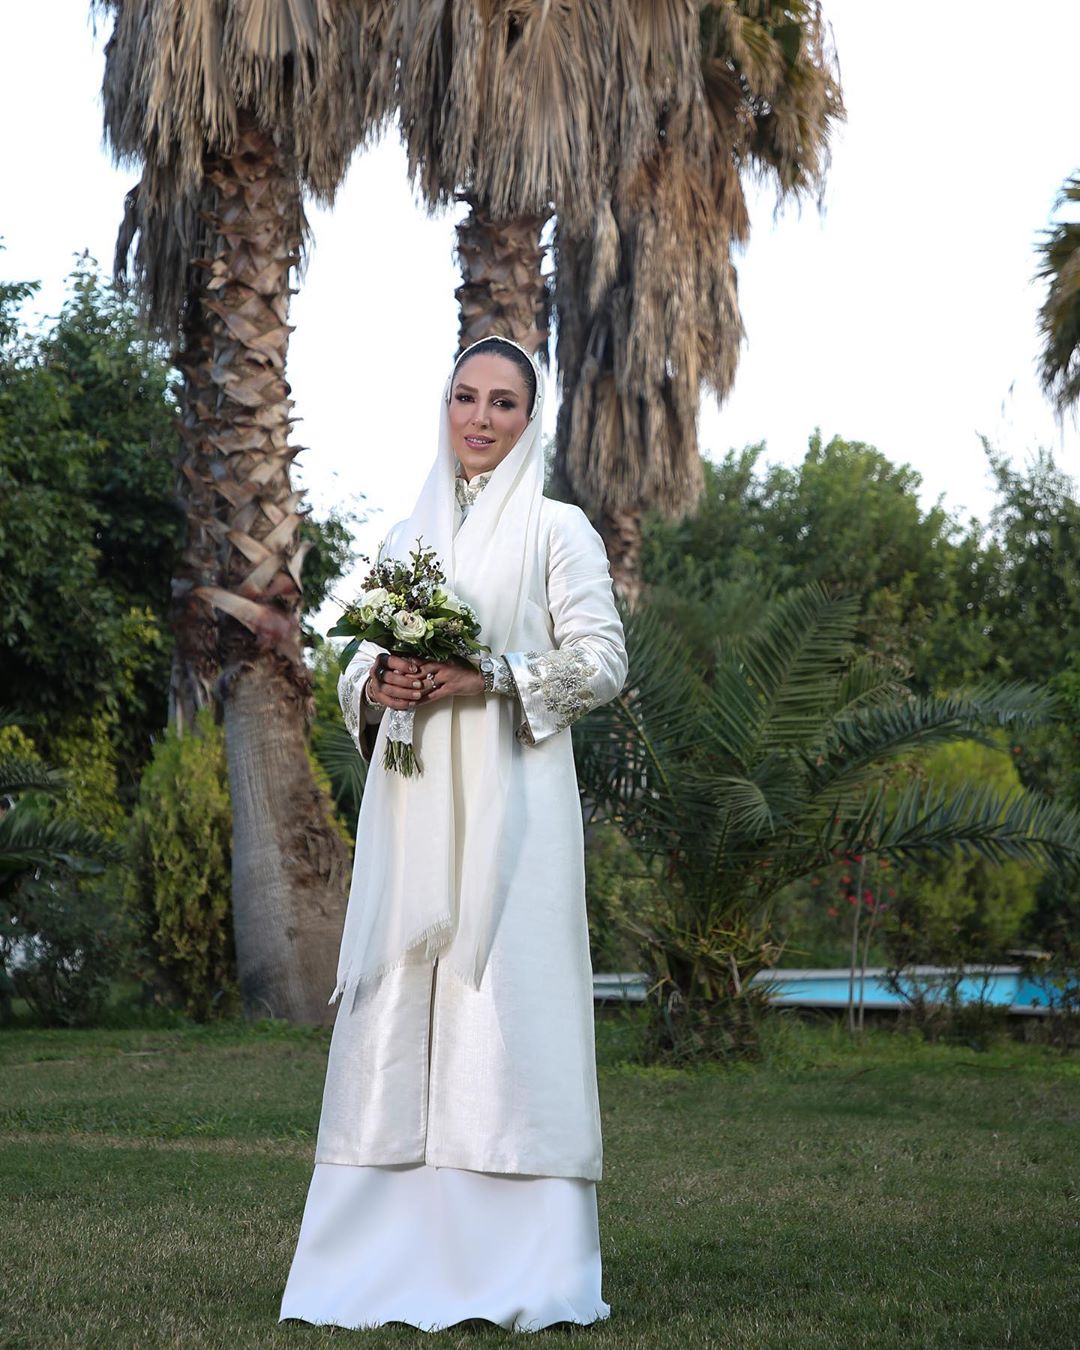 عکس های مراسم عروسی سوگل طهماسبی در طبیعت